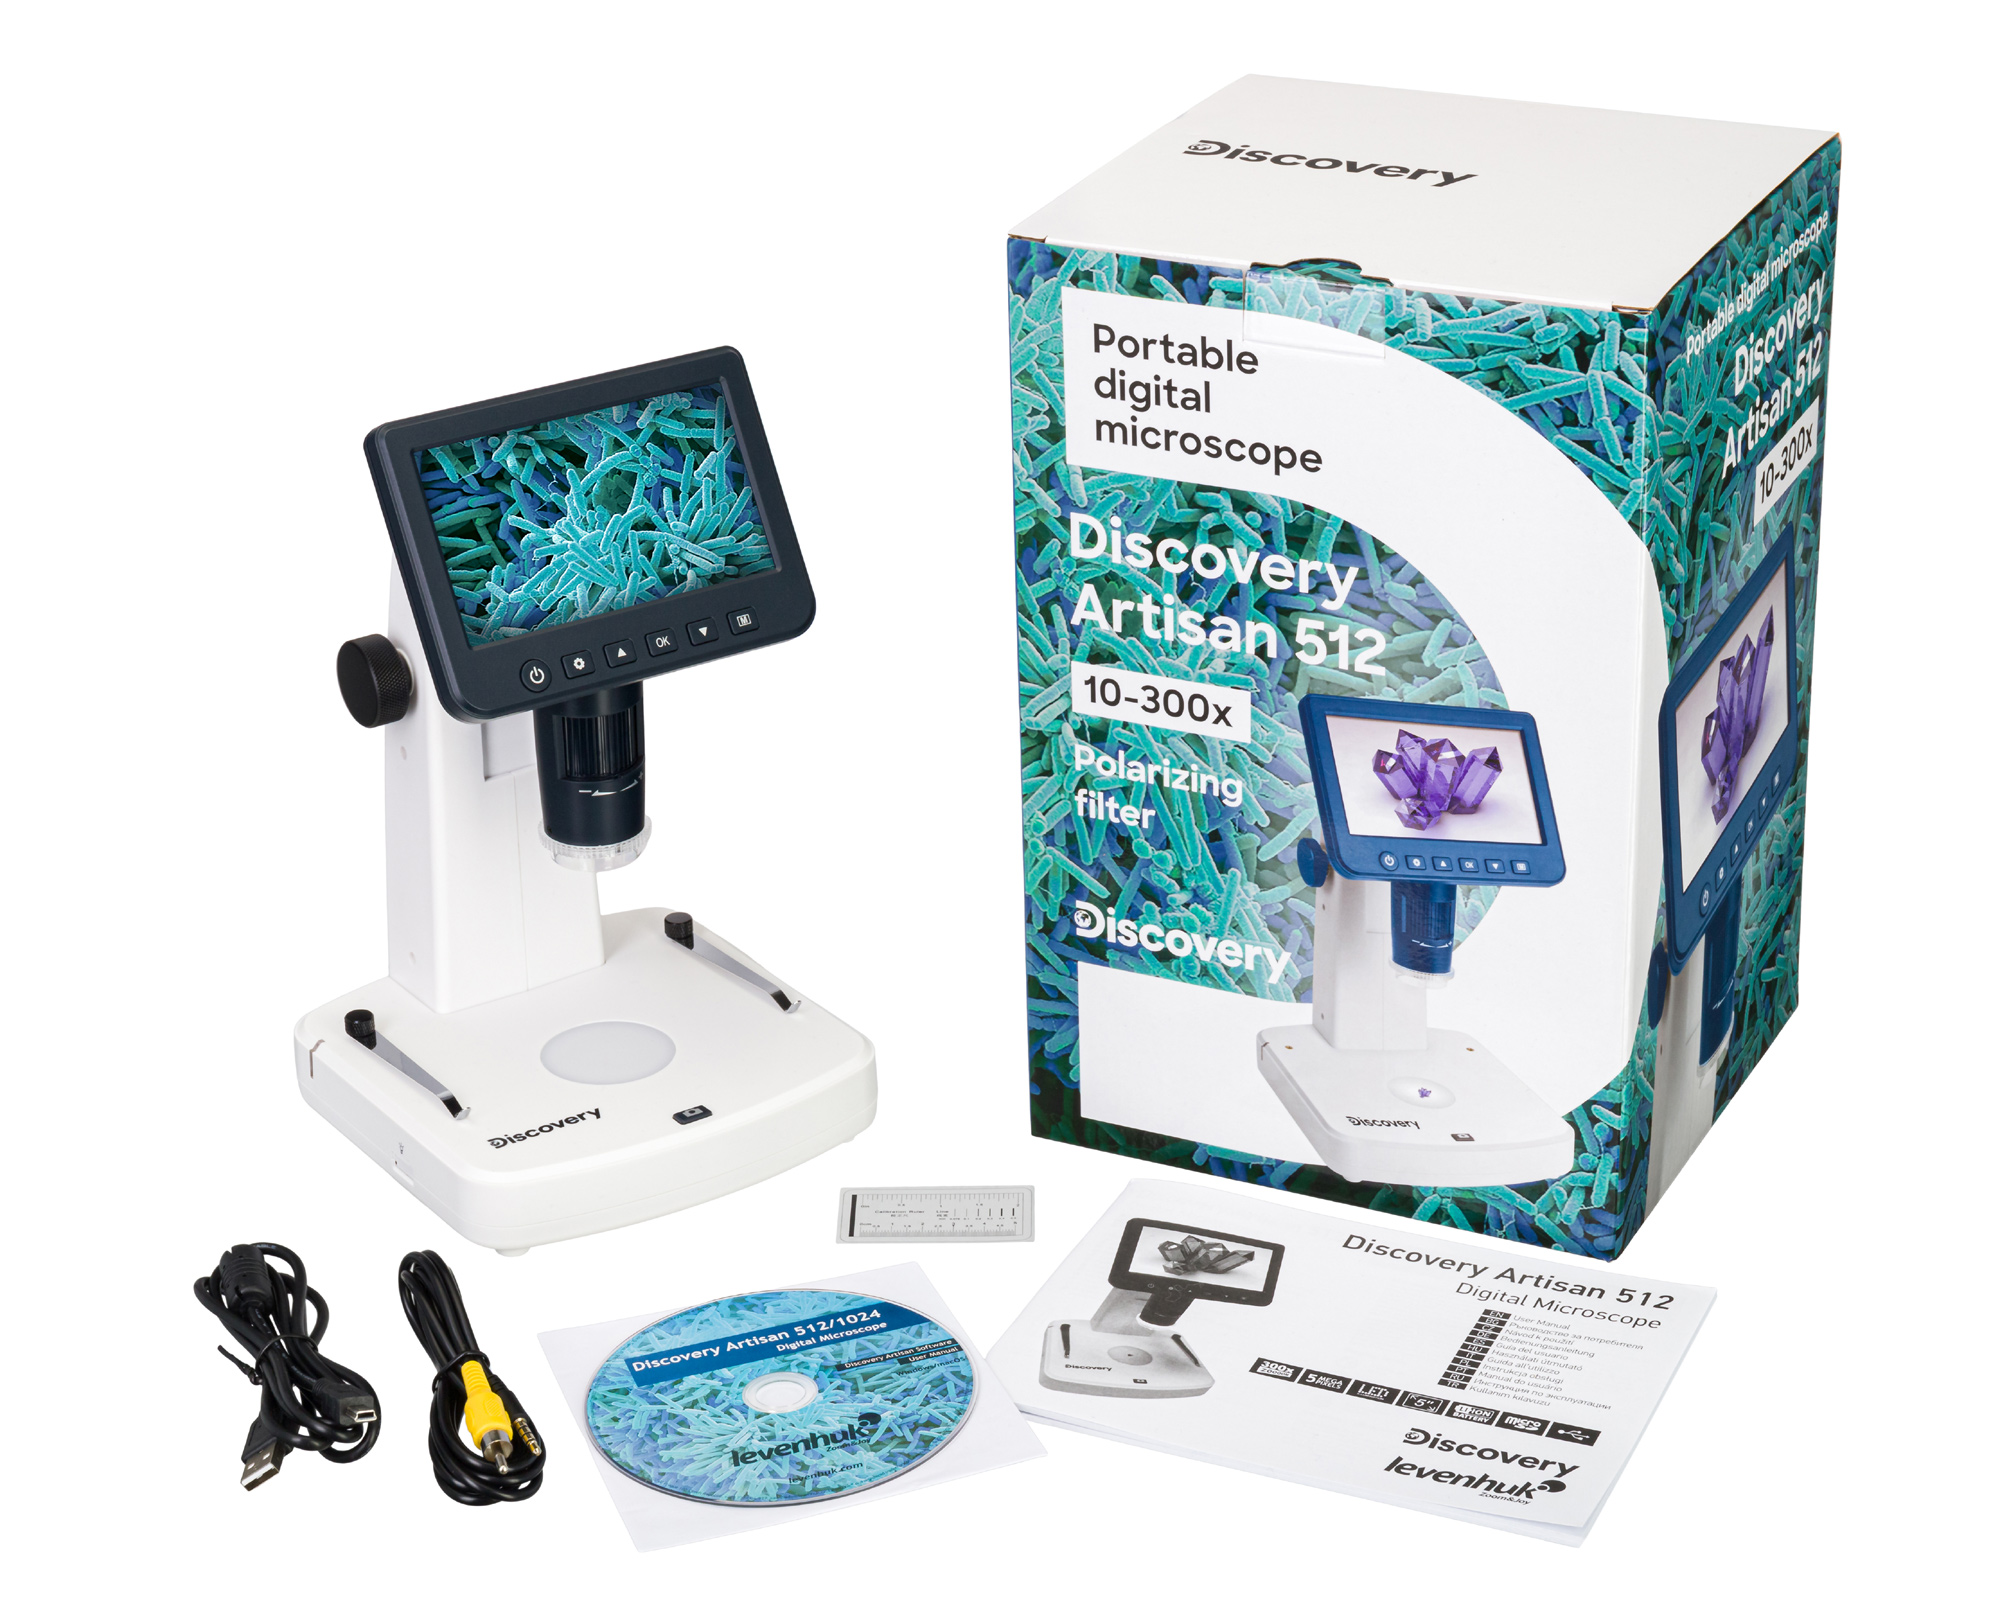 Súčasťou dodávky je digitálny mikroskop Discovery Artisan 512, AC adaptér, USB a AV kábel, kalibračné stupnice, podporné CD so softvérom, záručný list a užívateľský návod.